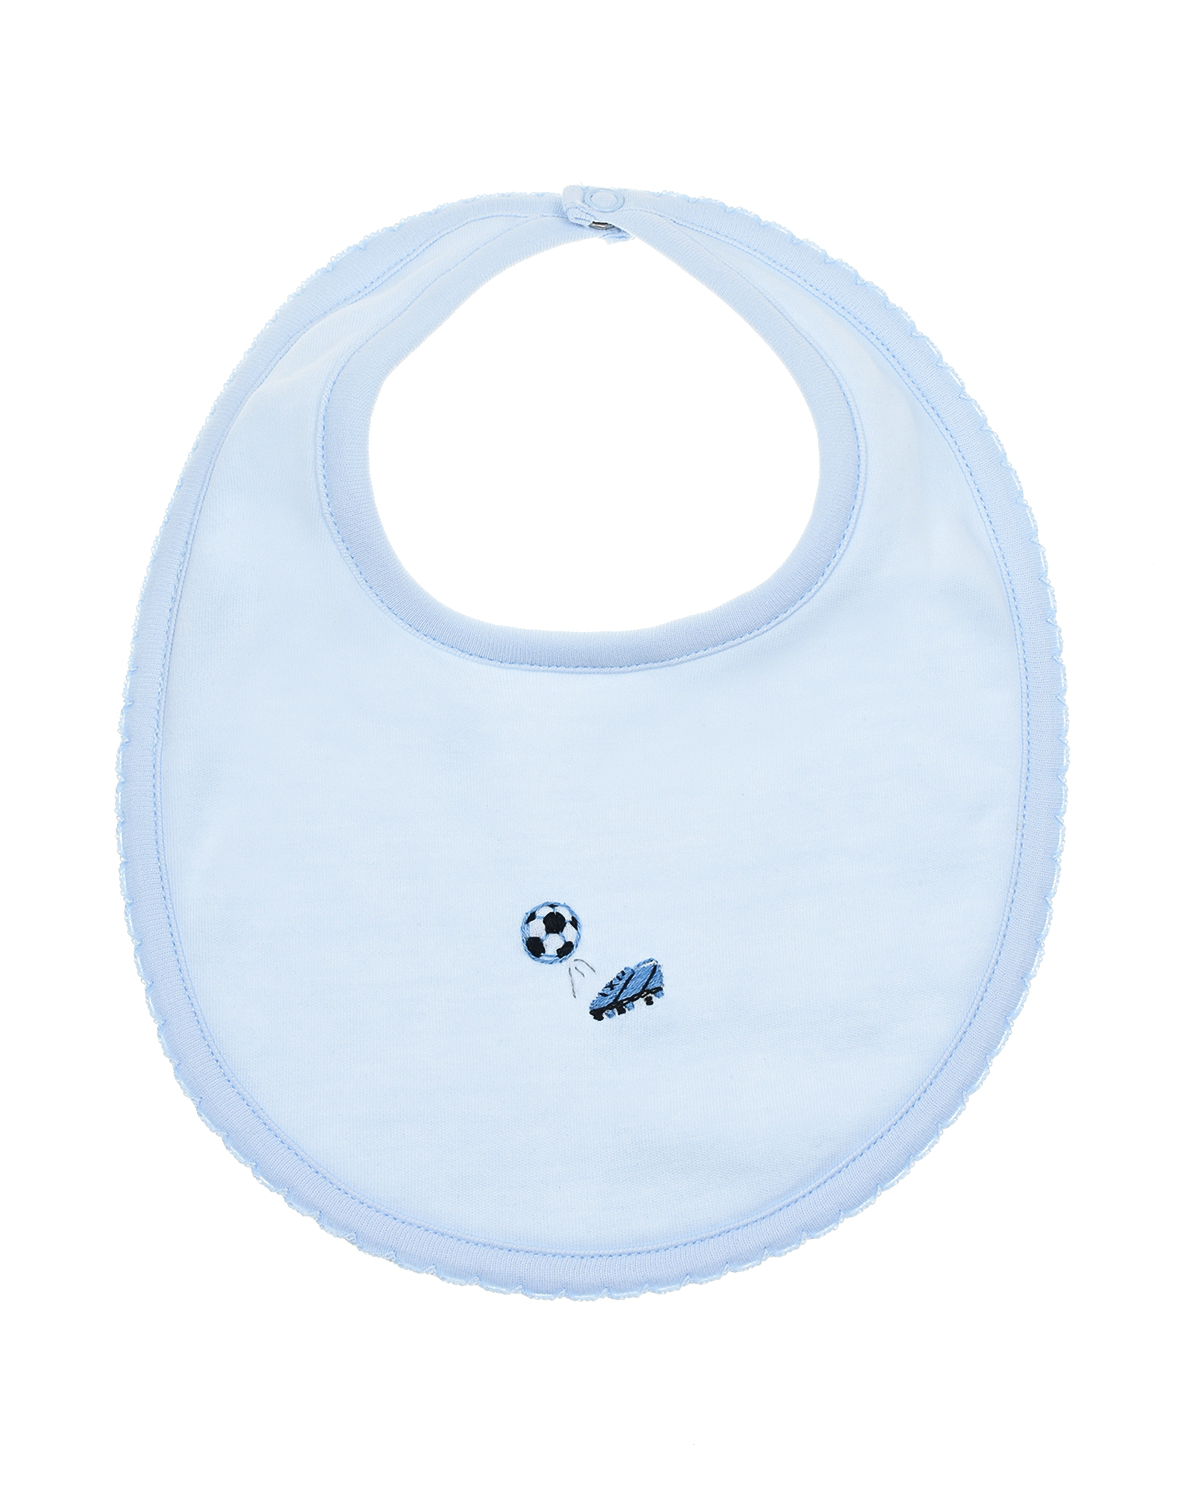 Слюнявчик с вышивкой "Футбол" Lyda Baby детский, размер unica, цвет голубой - фото 1